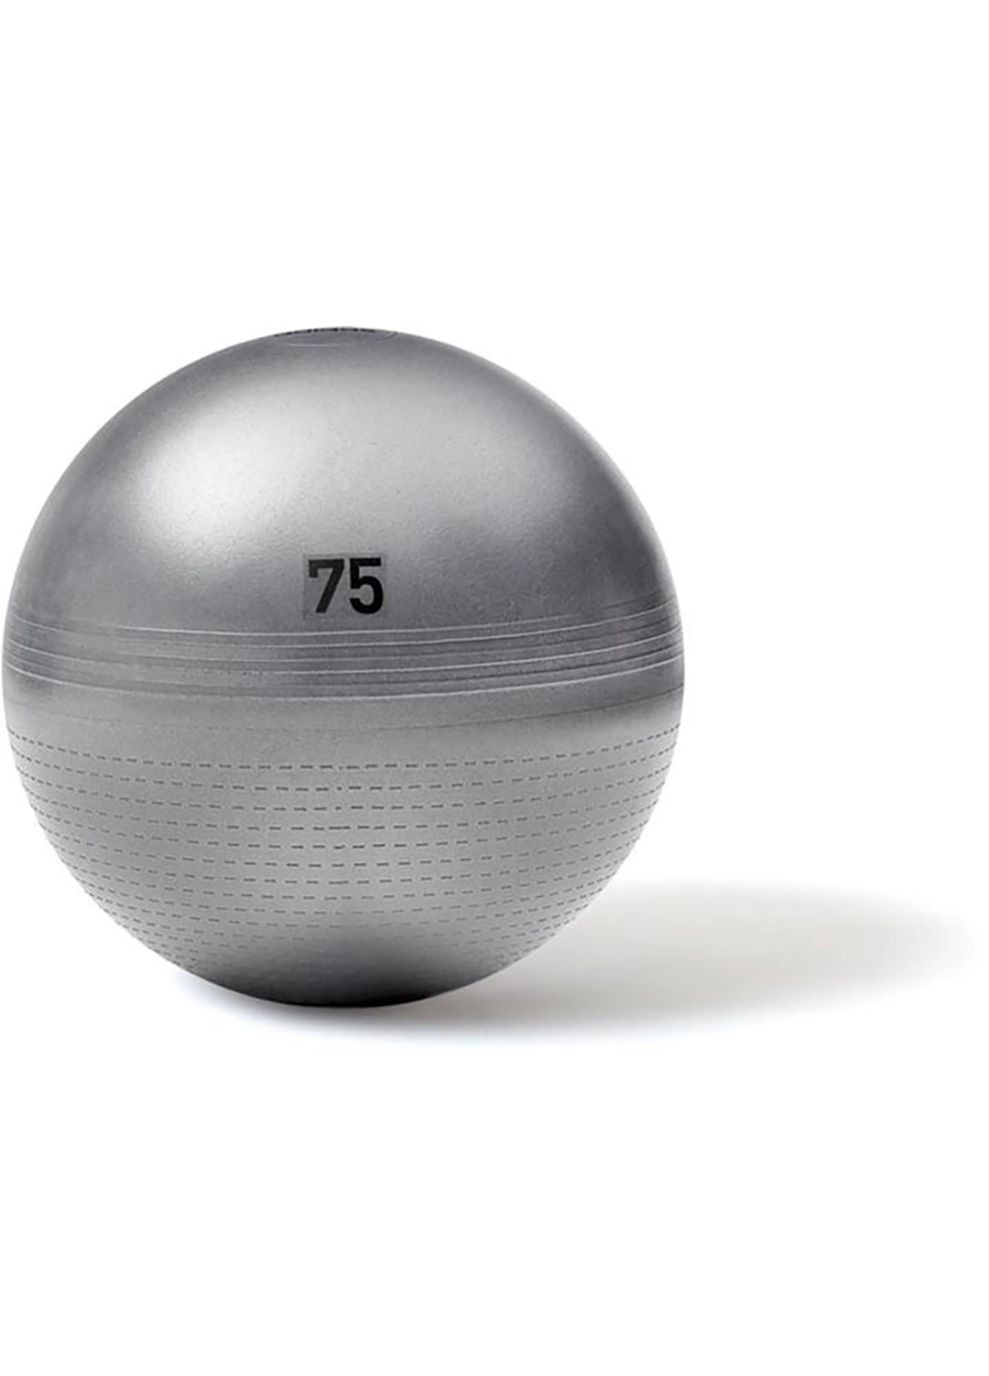 Фітбол Gymball сірий Уні 55 см adidas (268746829)